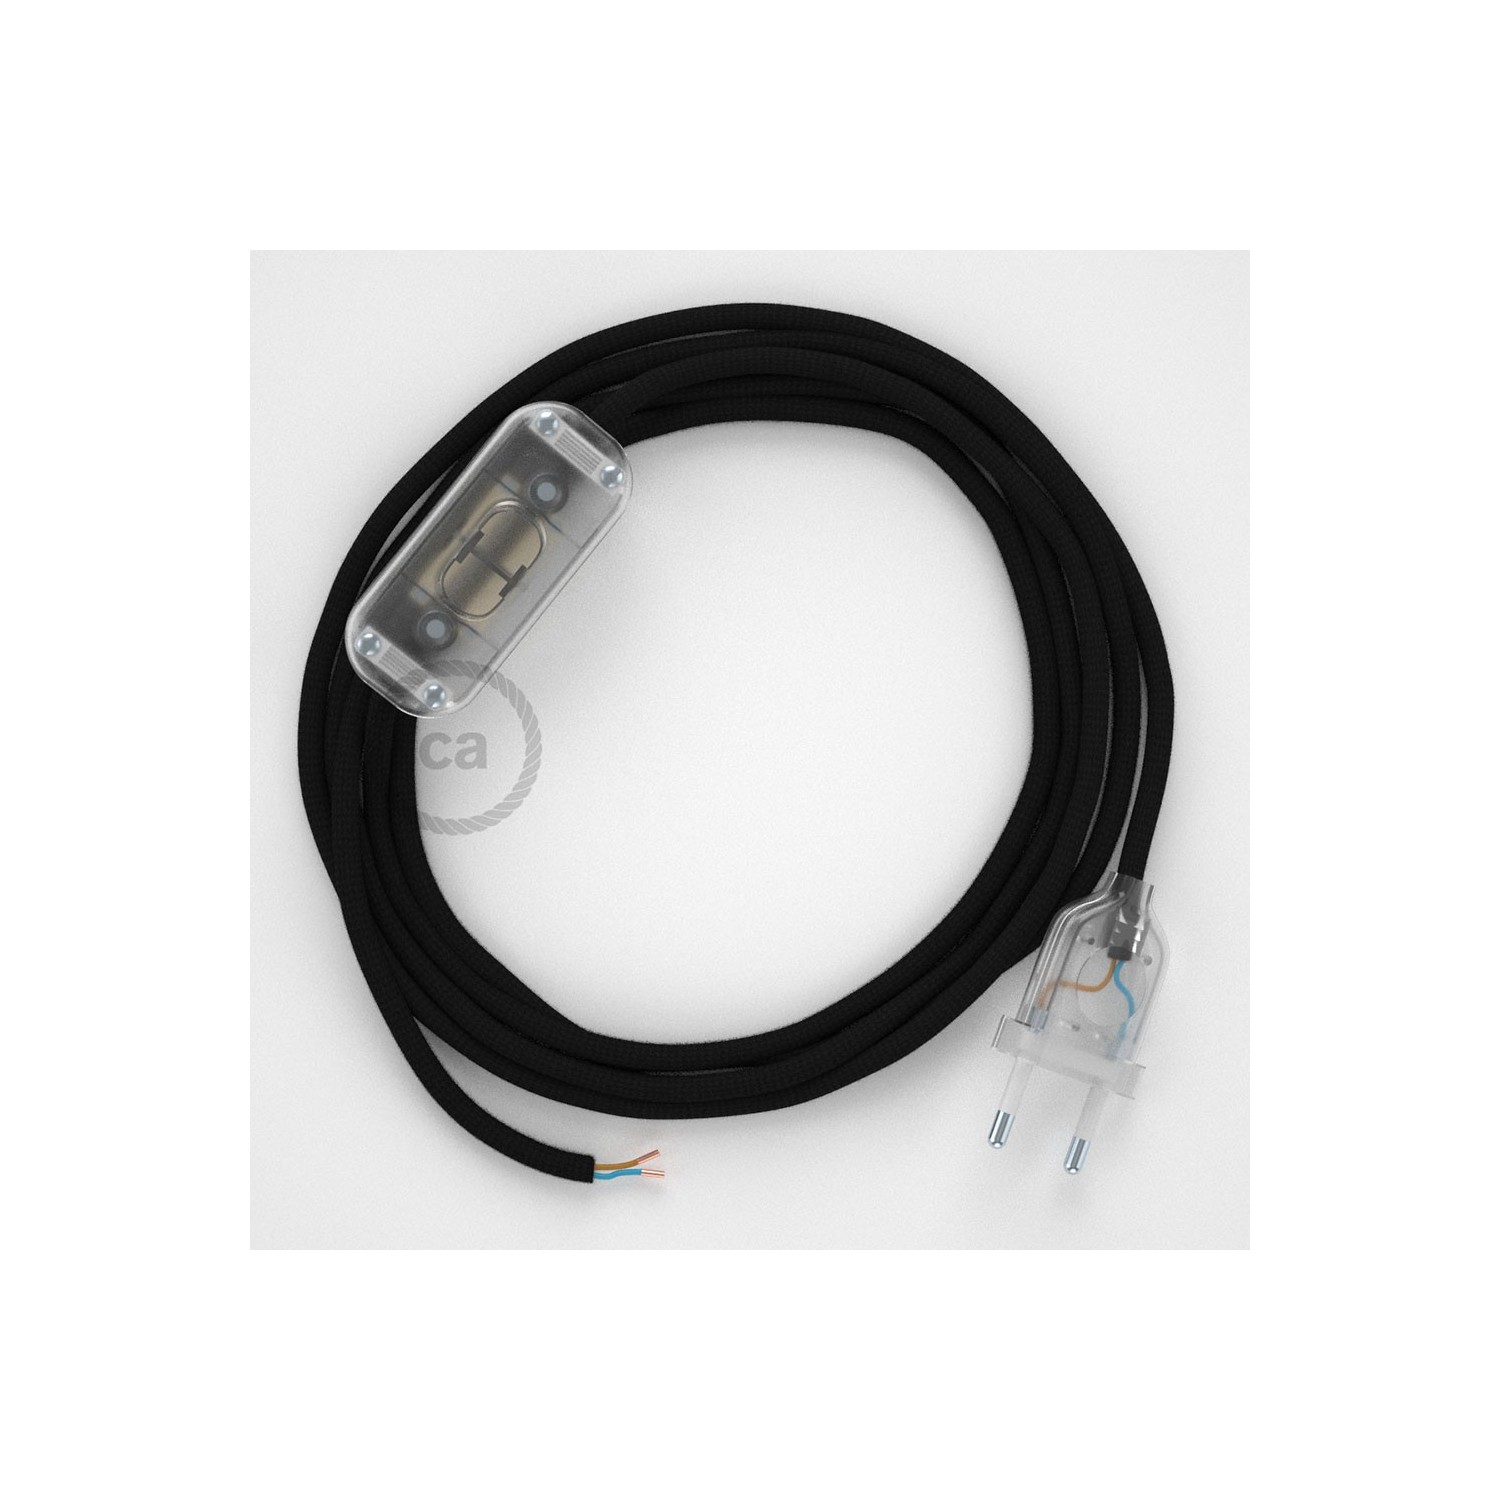 Cordon pour lampe, câble RM04 Effet Soie Noir 1,80 m. Choisissez la couleur de la fiche et de l'interrupteur!